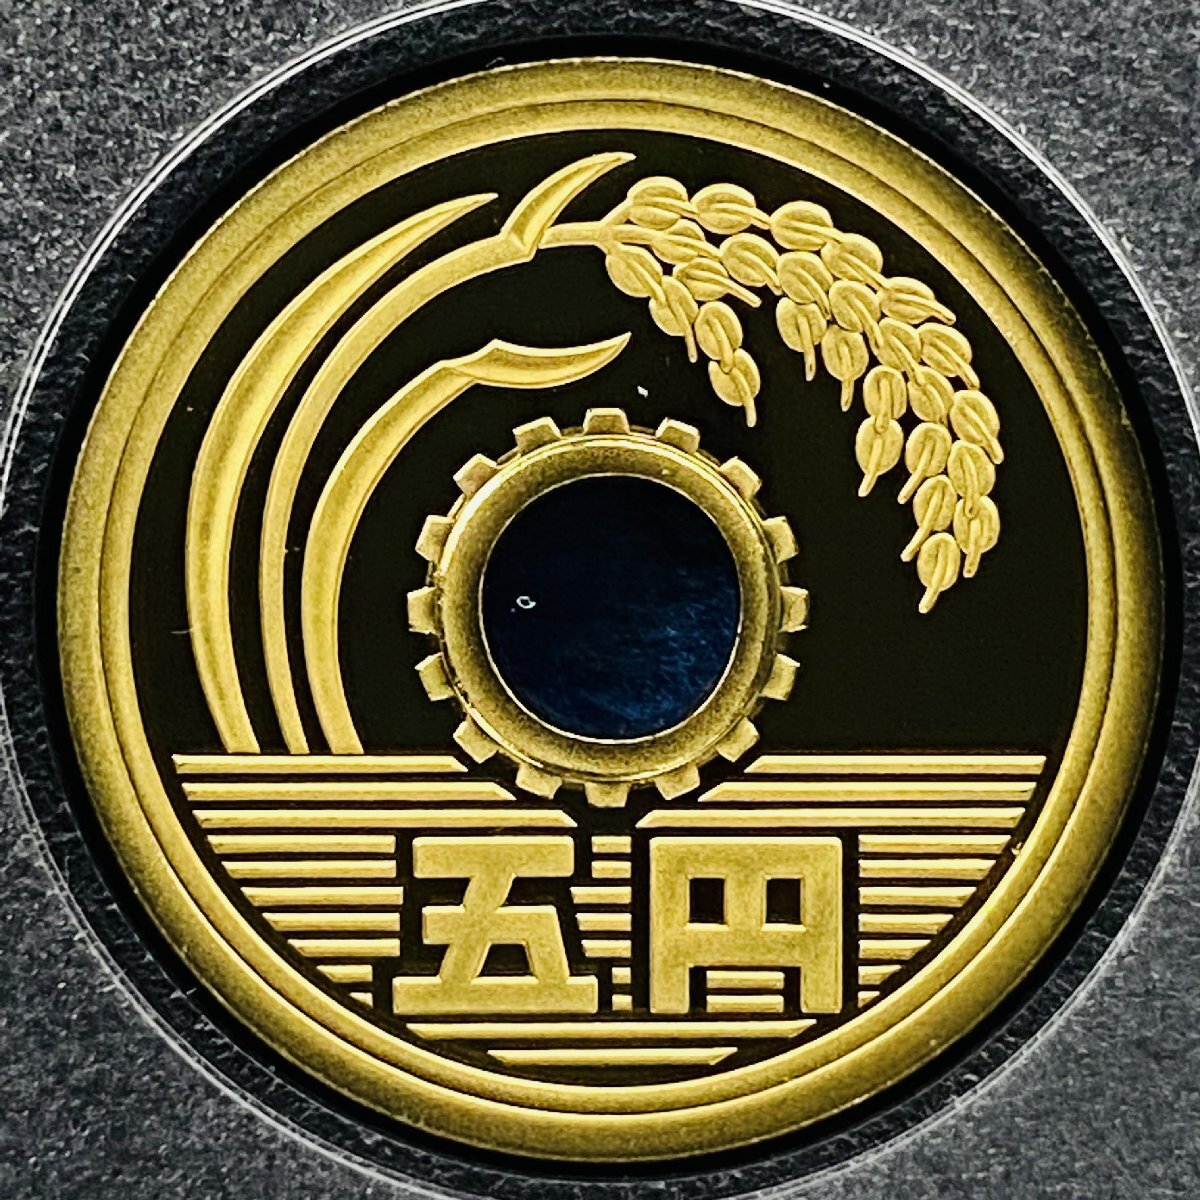 2007年 平成19年 通常プルーフ貨幣セット 額面666円 年銘板有 全揃い 記念硬貨 記念貨幣 貨幣組合 日本円 限定貨幣 コレクション P2007_画像7